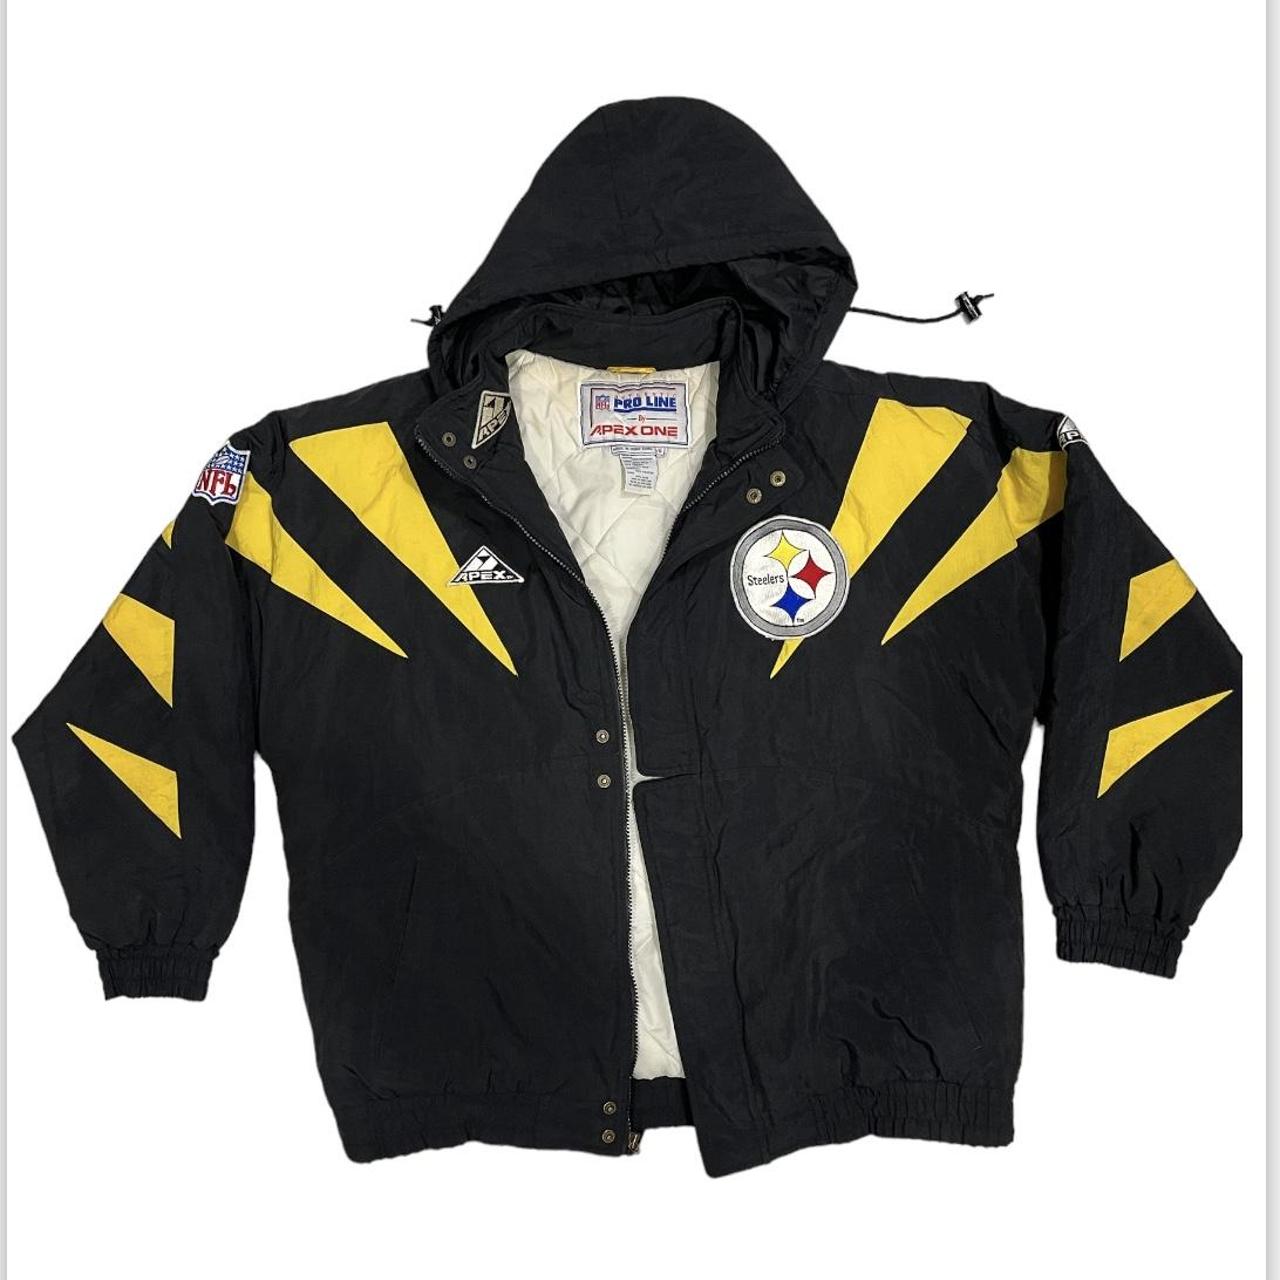 Pittsburgh Yellow Jackets Branding